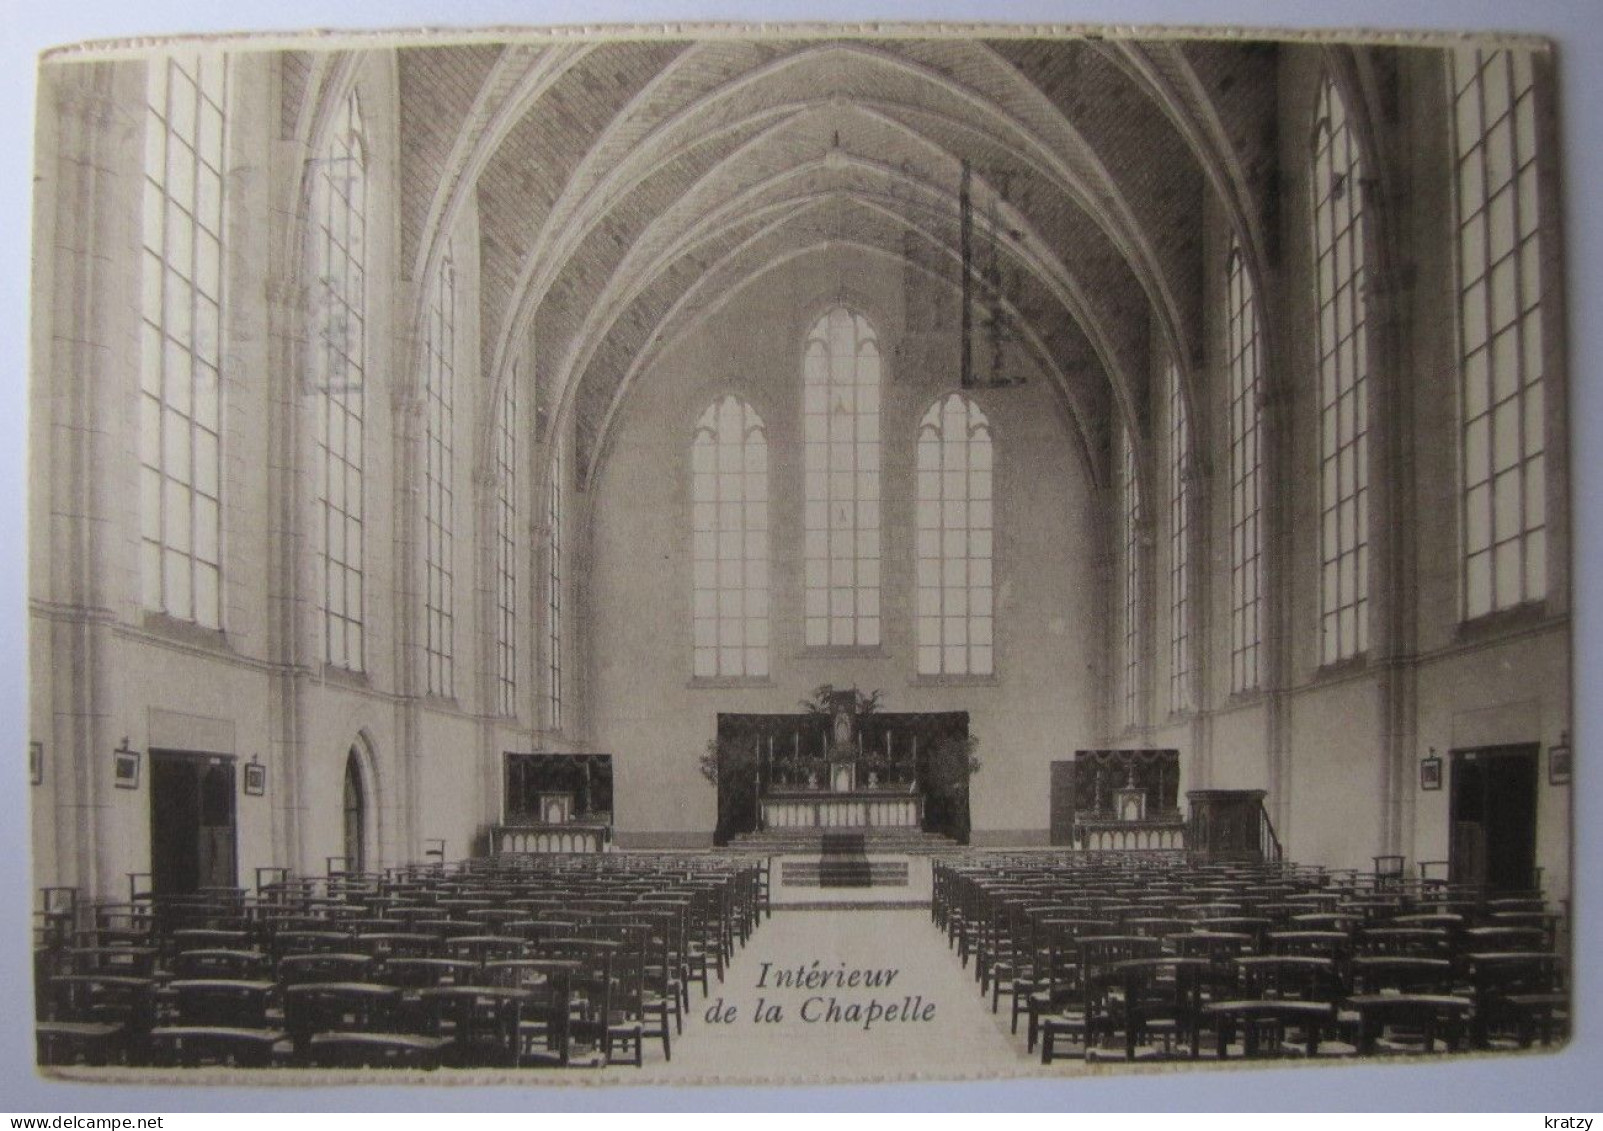 BELGIQUE - NAMUR - YVOIR - GODINNE - Collège Saint-Paul - Intérieur De La Chapelle - 1929 - Yvoir